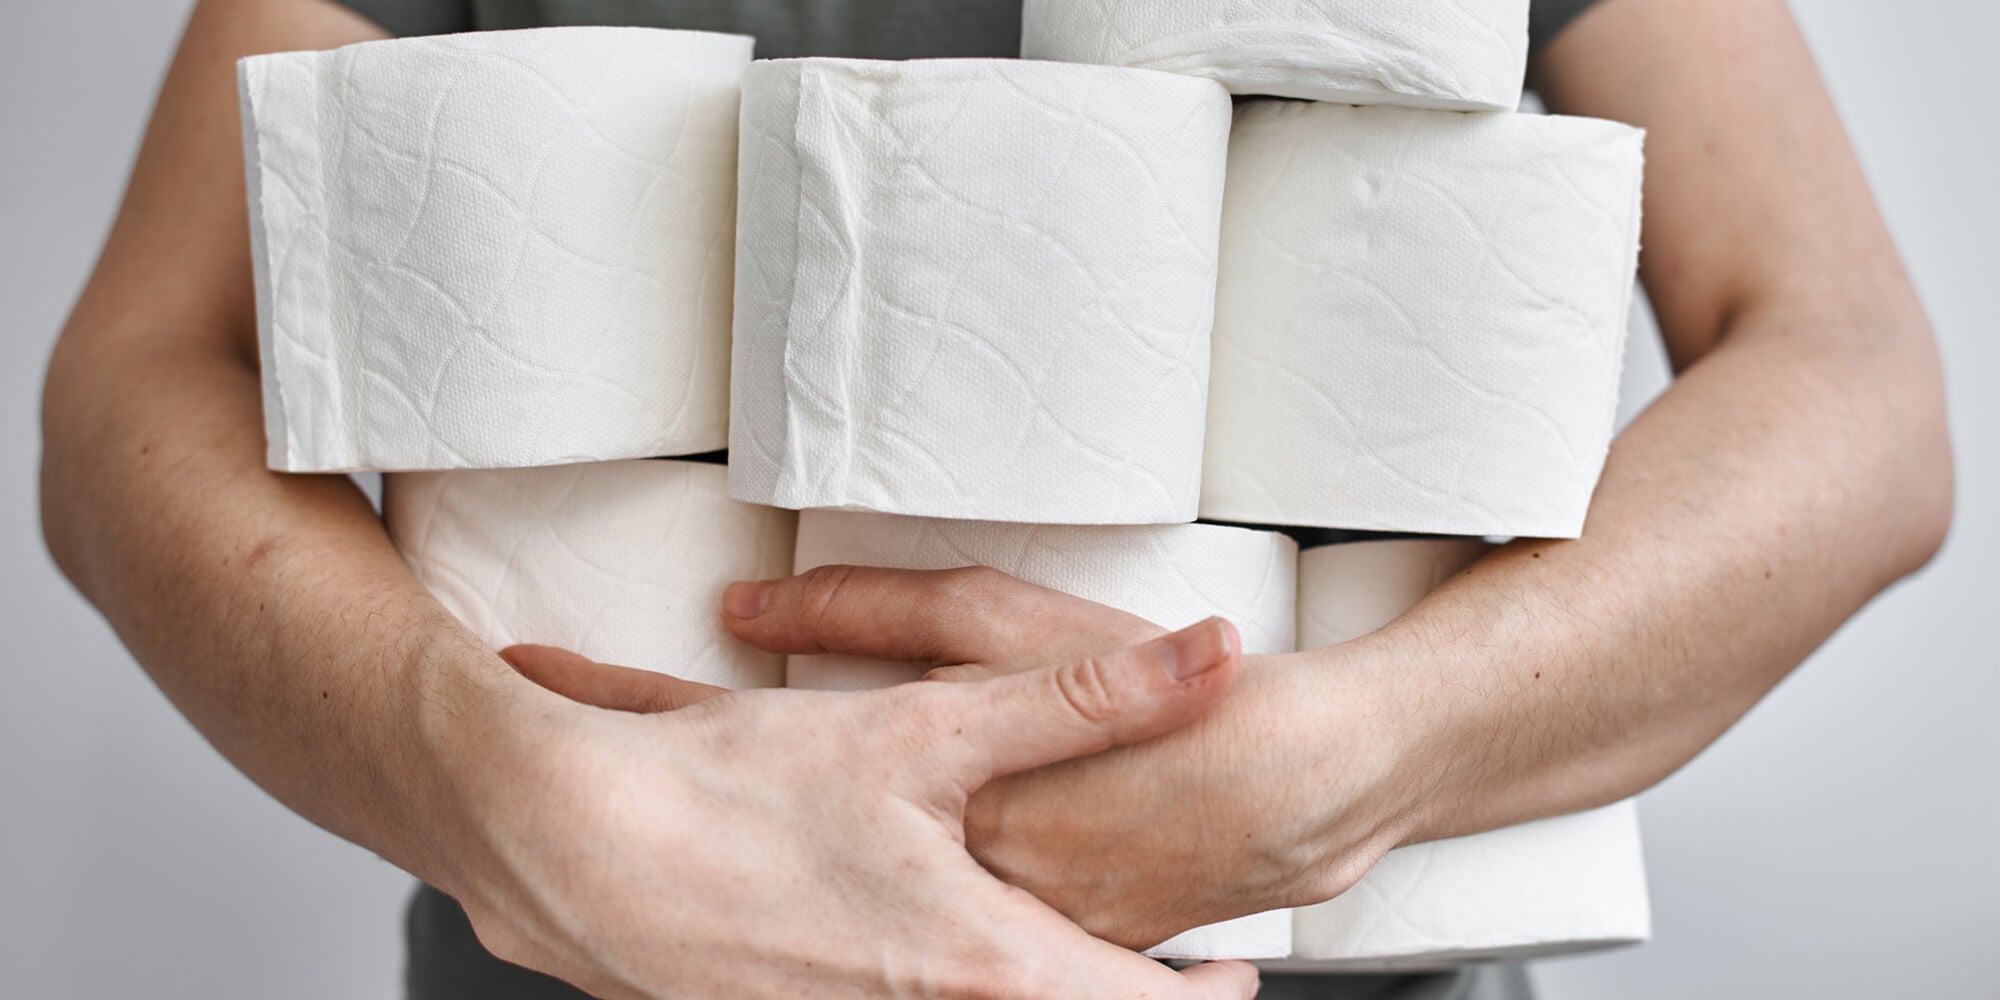 Par quoi remplacer le papier toilette ? Alternatives zéro déchet